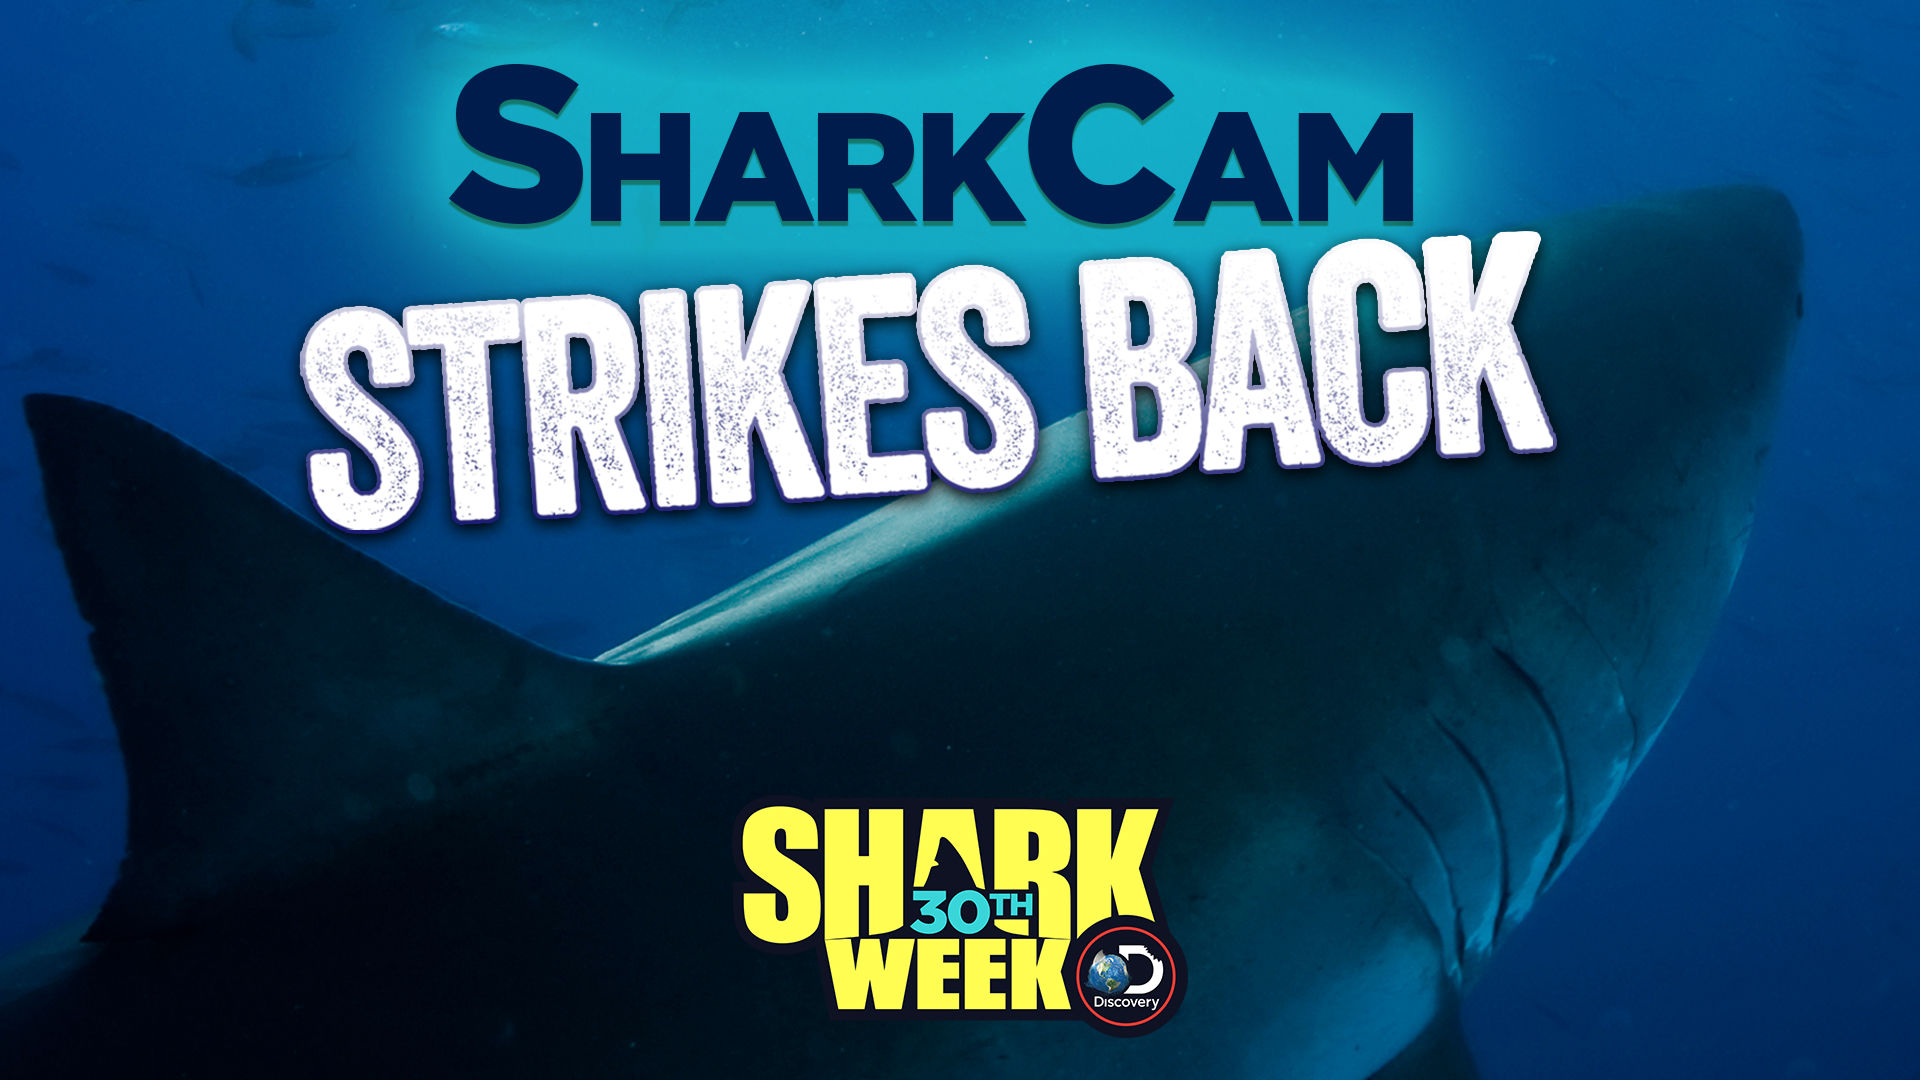 Shark week. Remus-100 SHARKCAM. Sharks back Ocean.